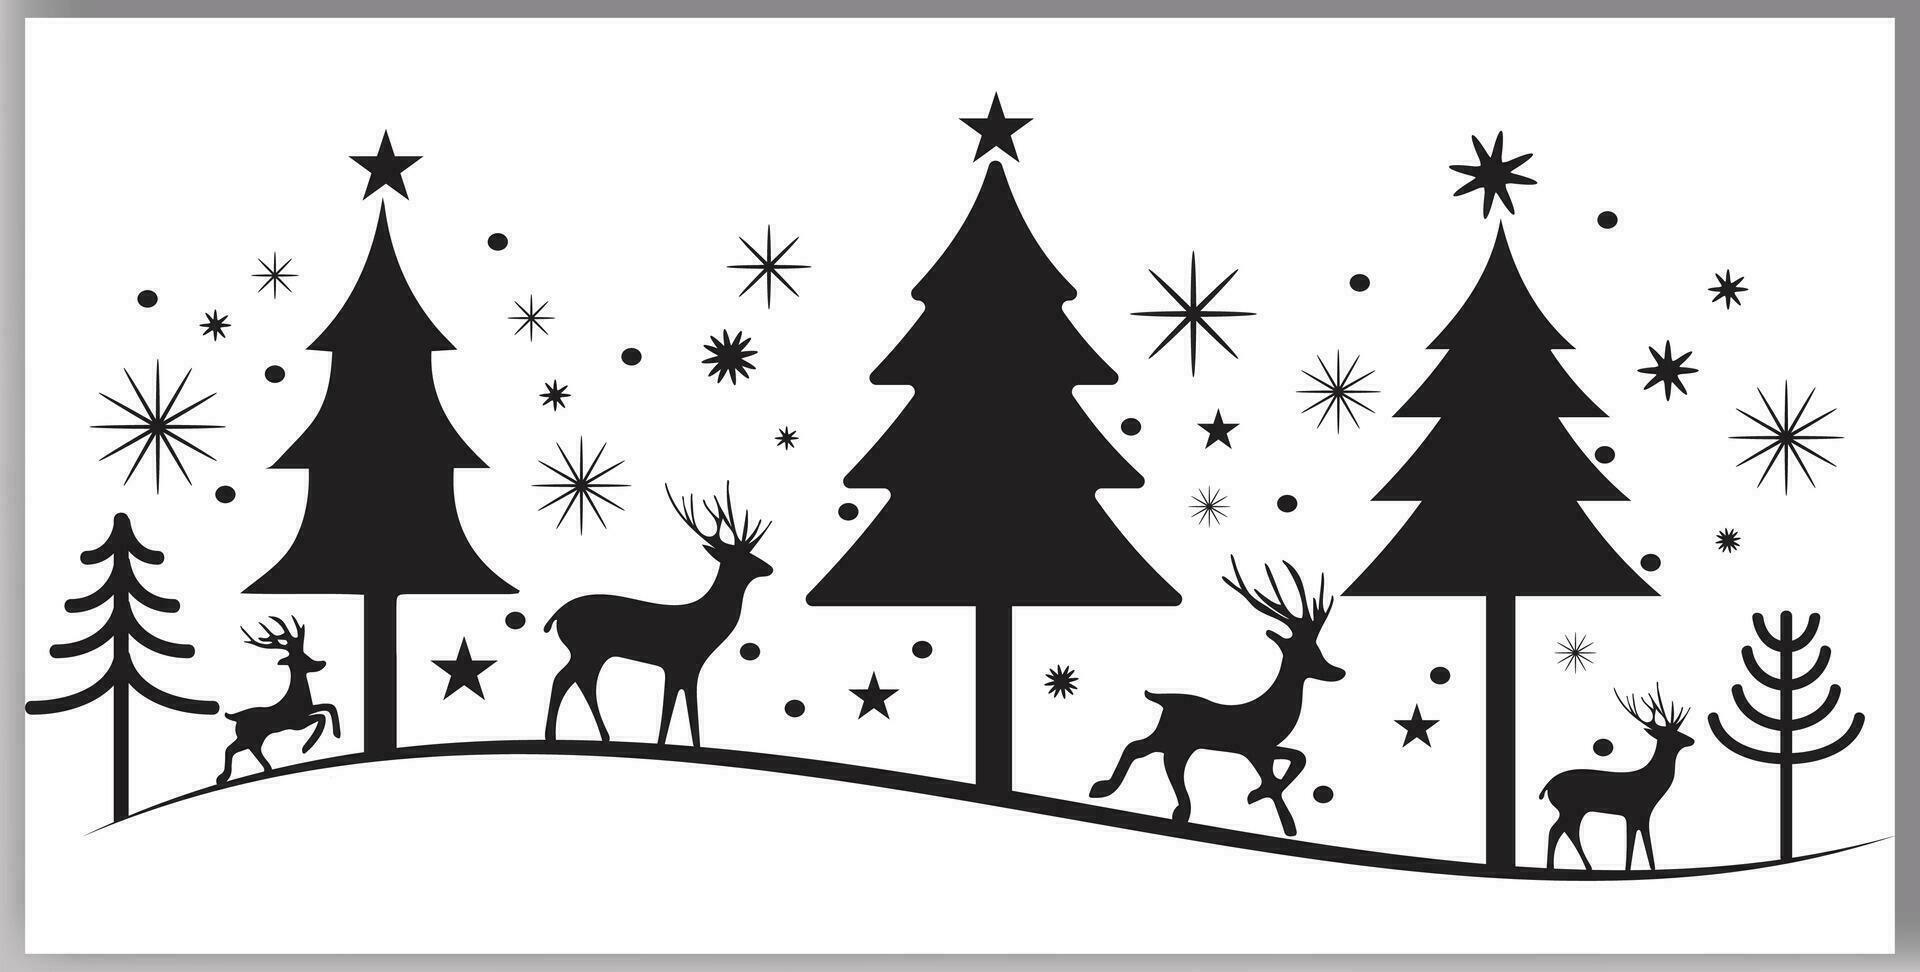 jul träd ren och stjärnor i annorlunda design vektor